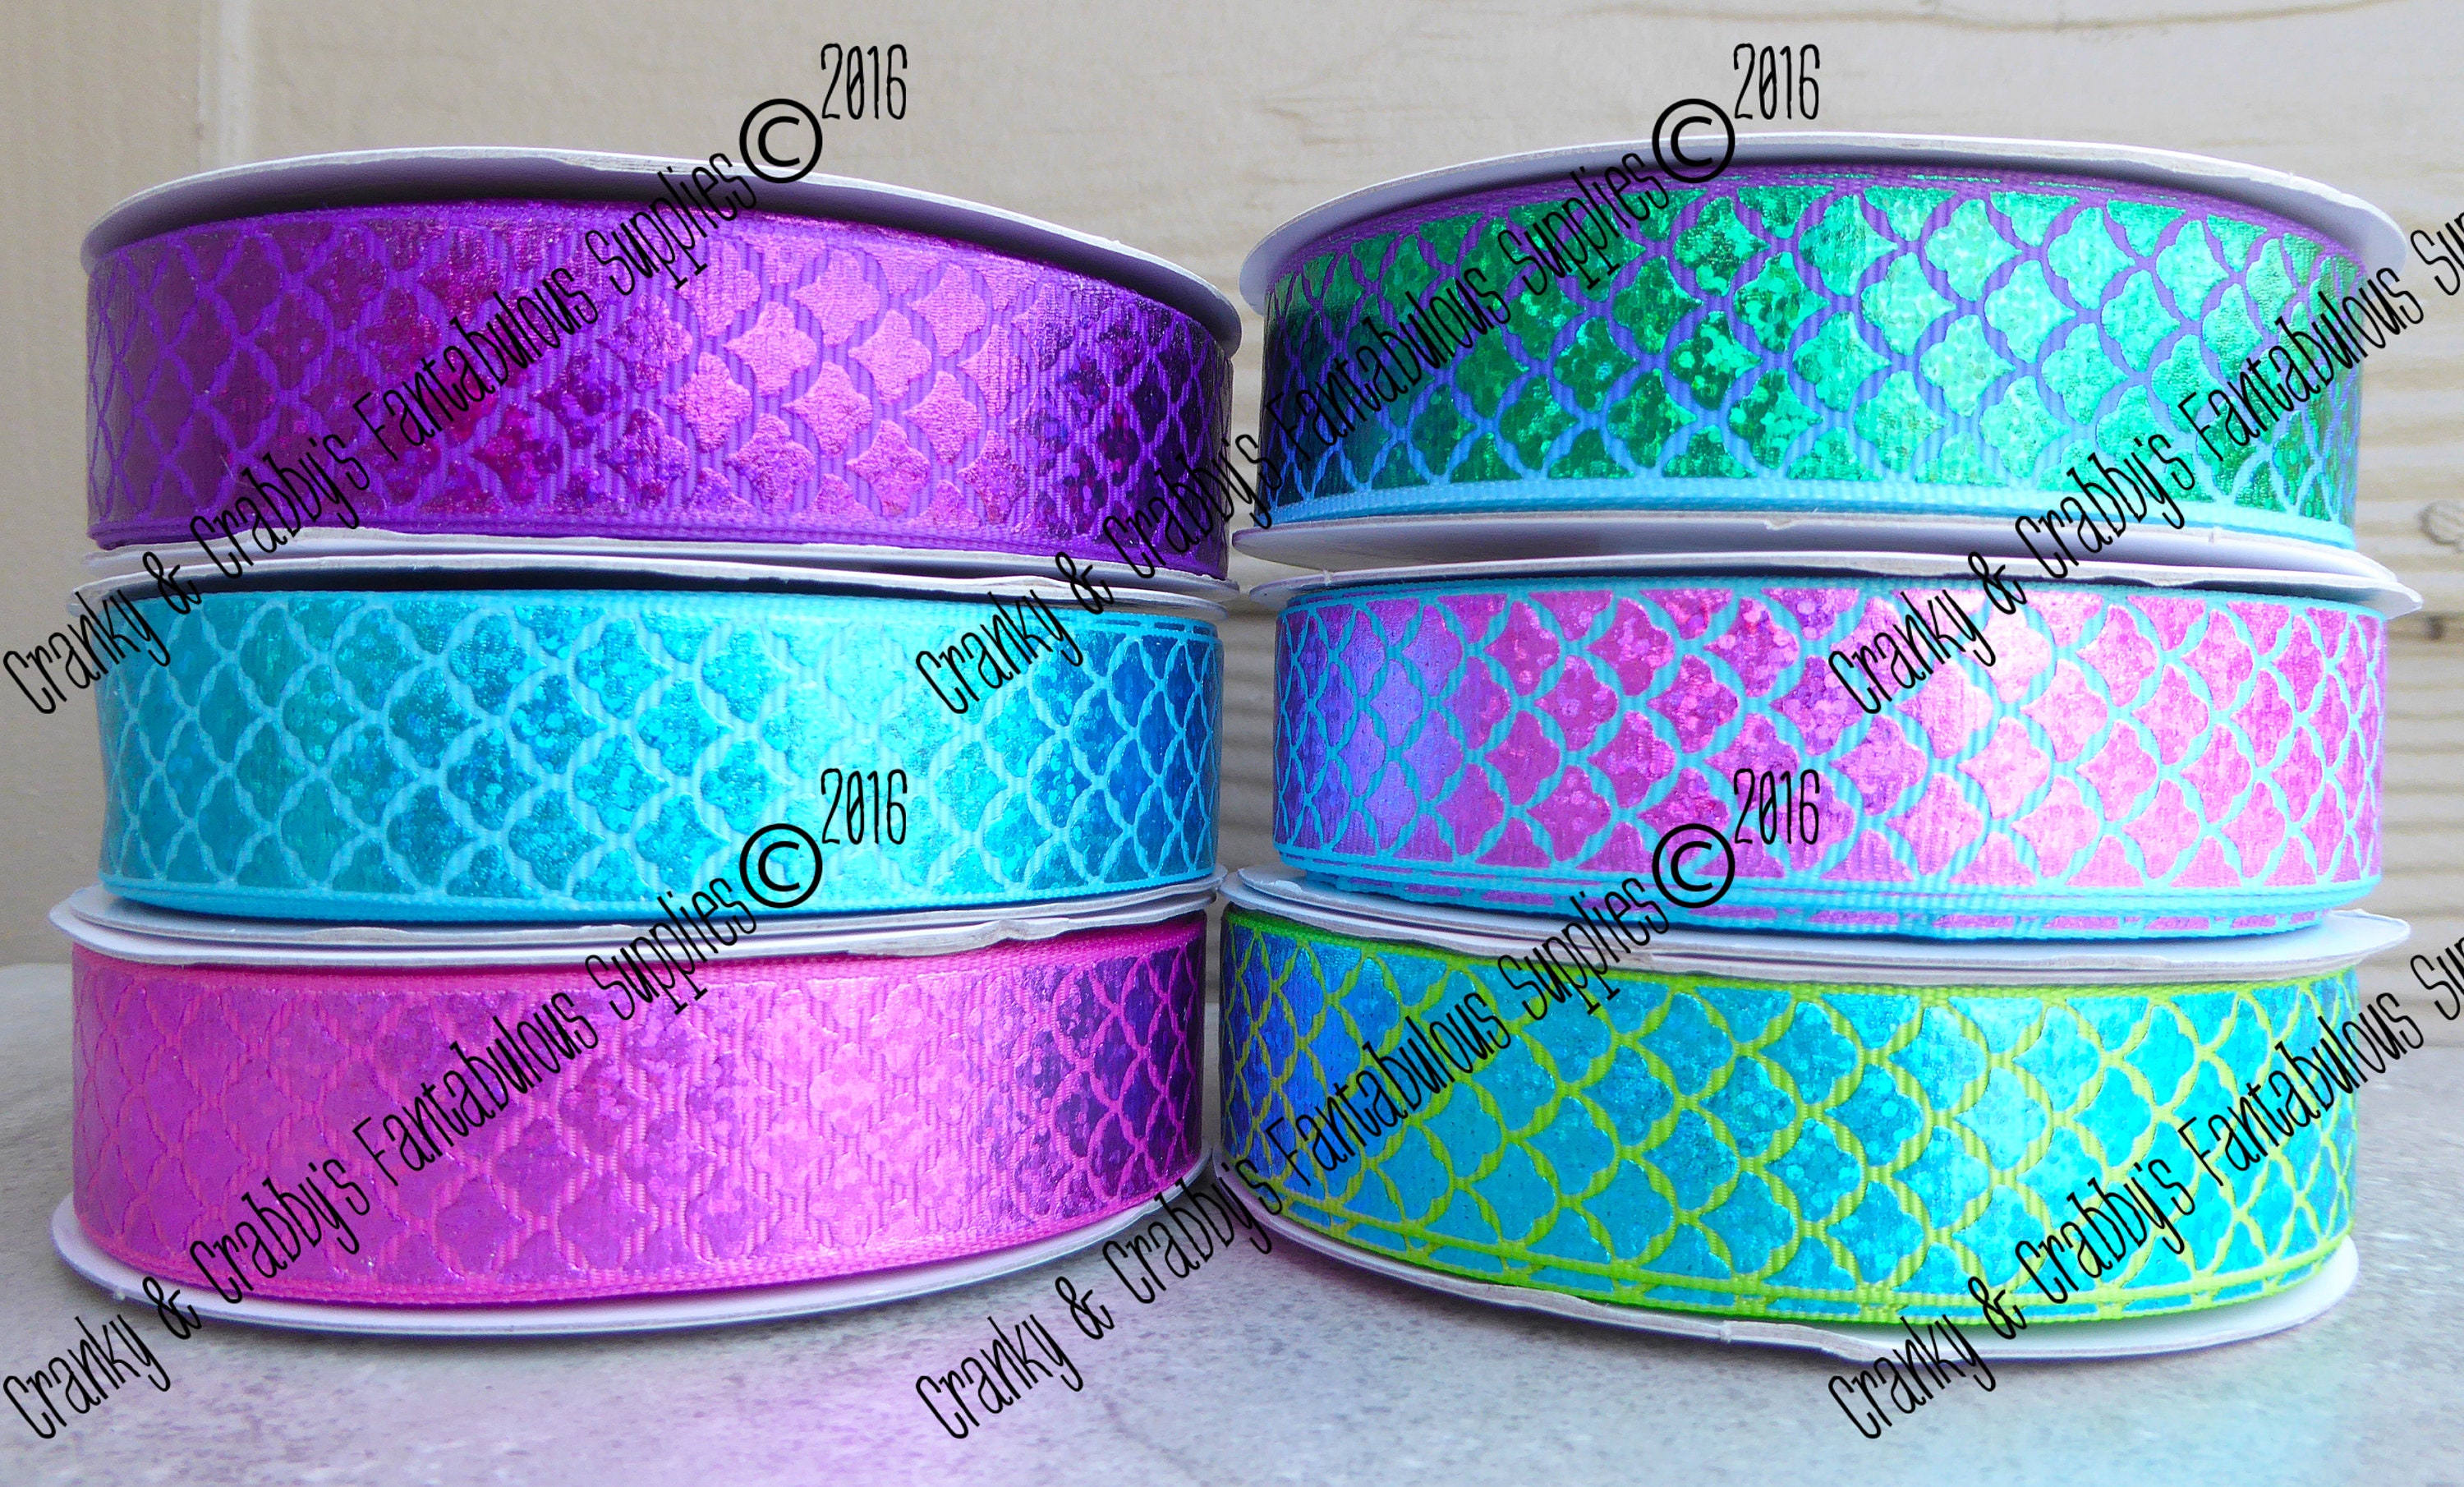 7/8 Foil Mermaid Scales US Designer Printed Ribbon 1yd, 3yd or 5